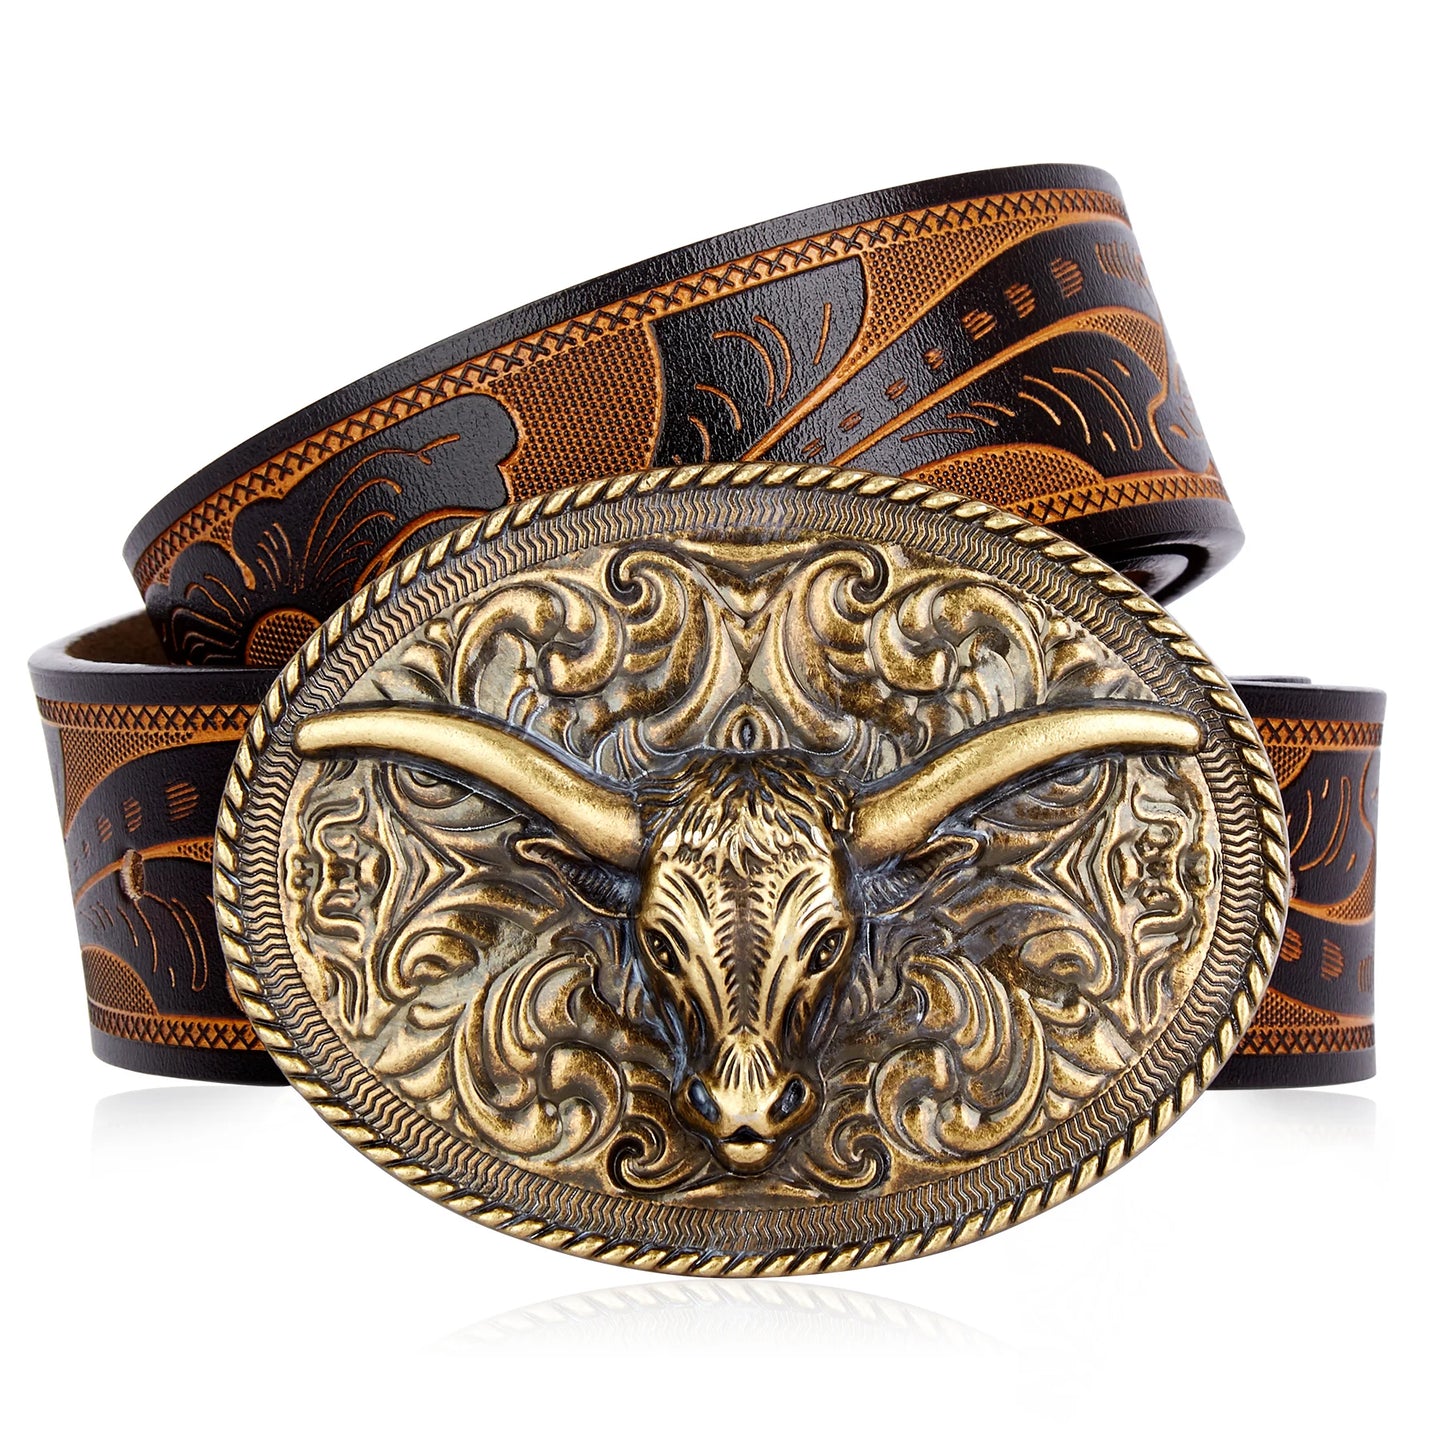 BISON DENIM Vintage Men's Belt Genuine Leather Cowhide Western Cowboy NK0057G DS050-1ZM